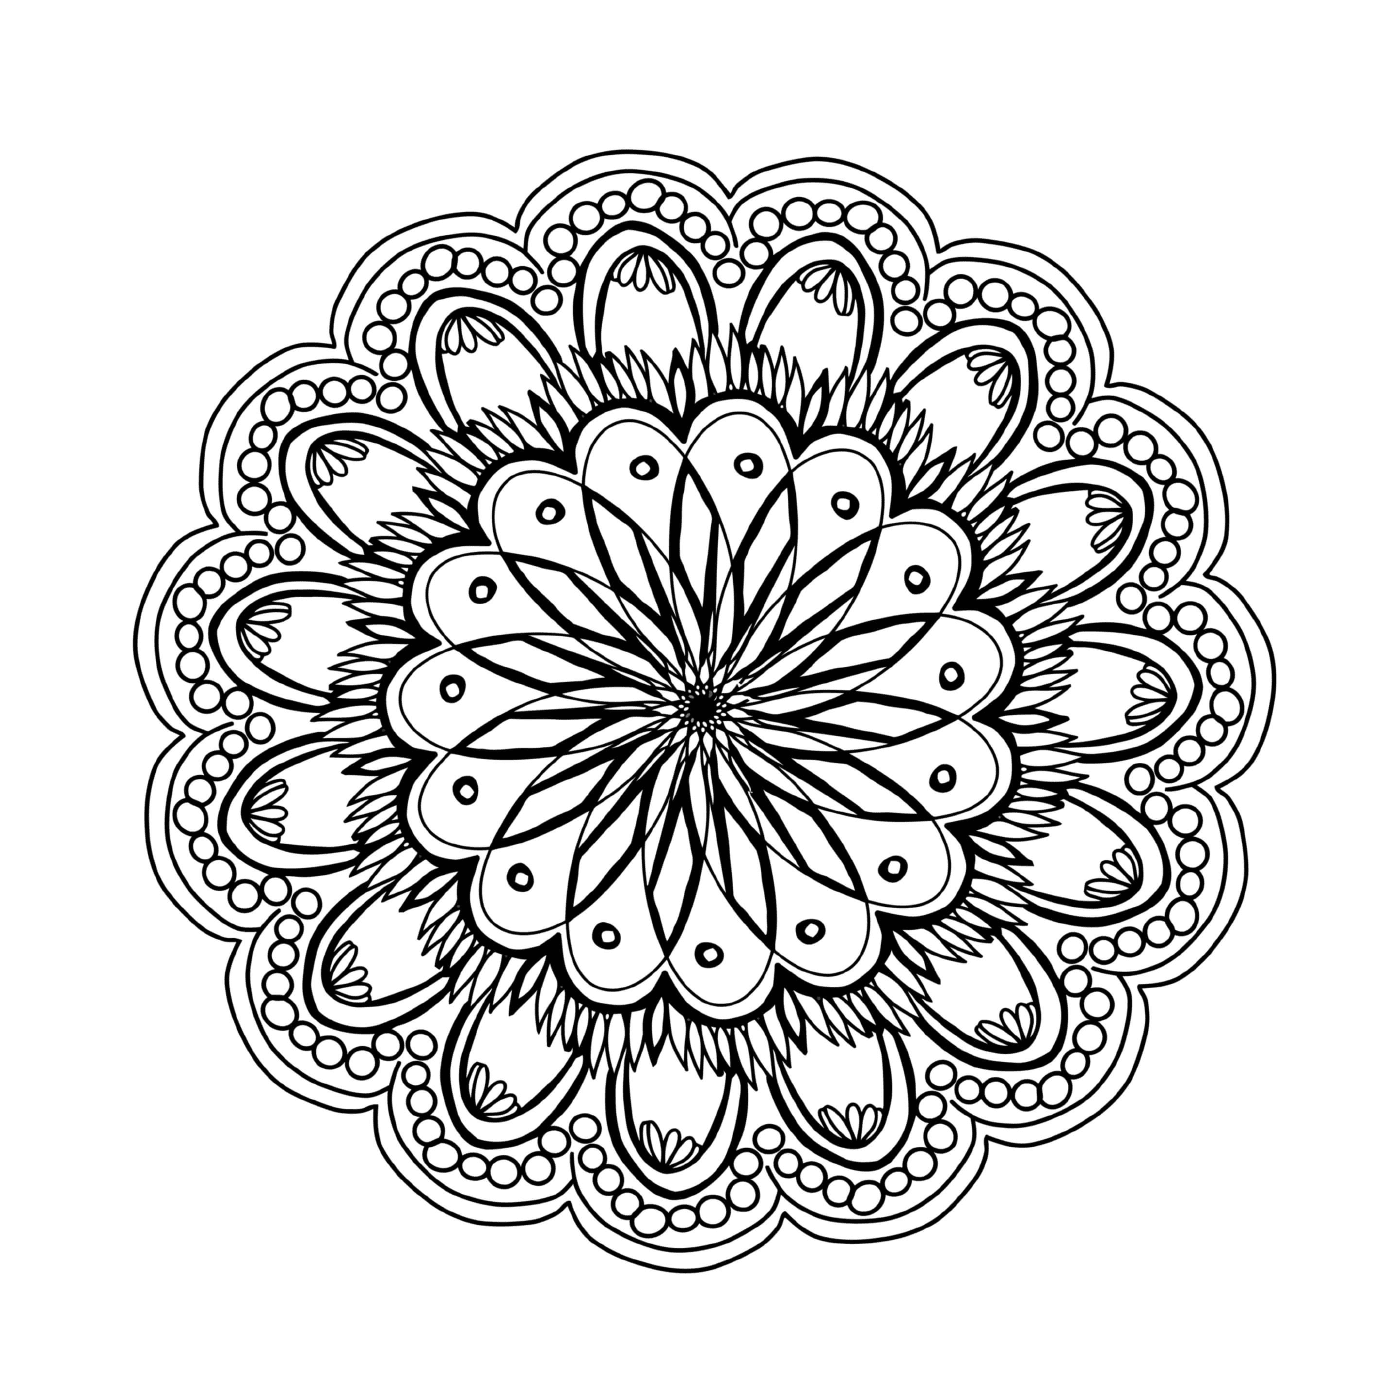  Una flor con un patrón circular 